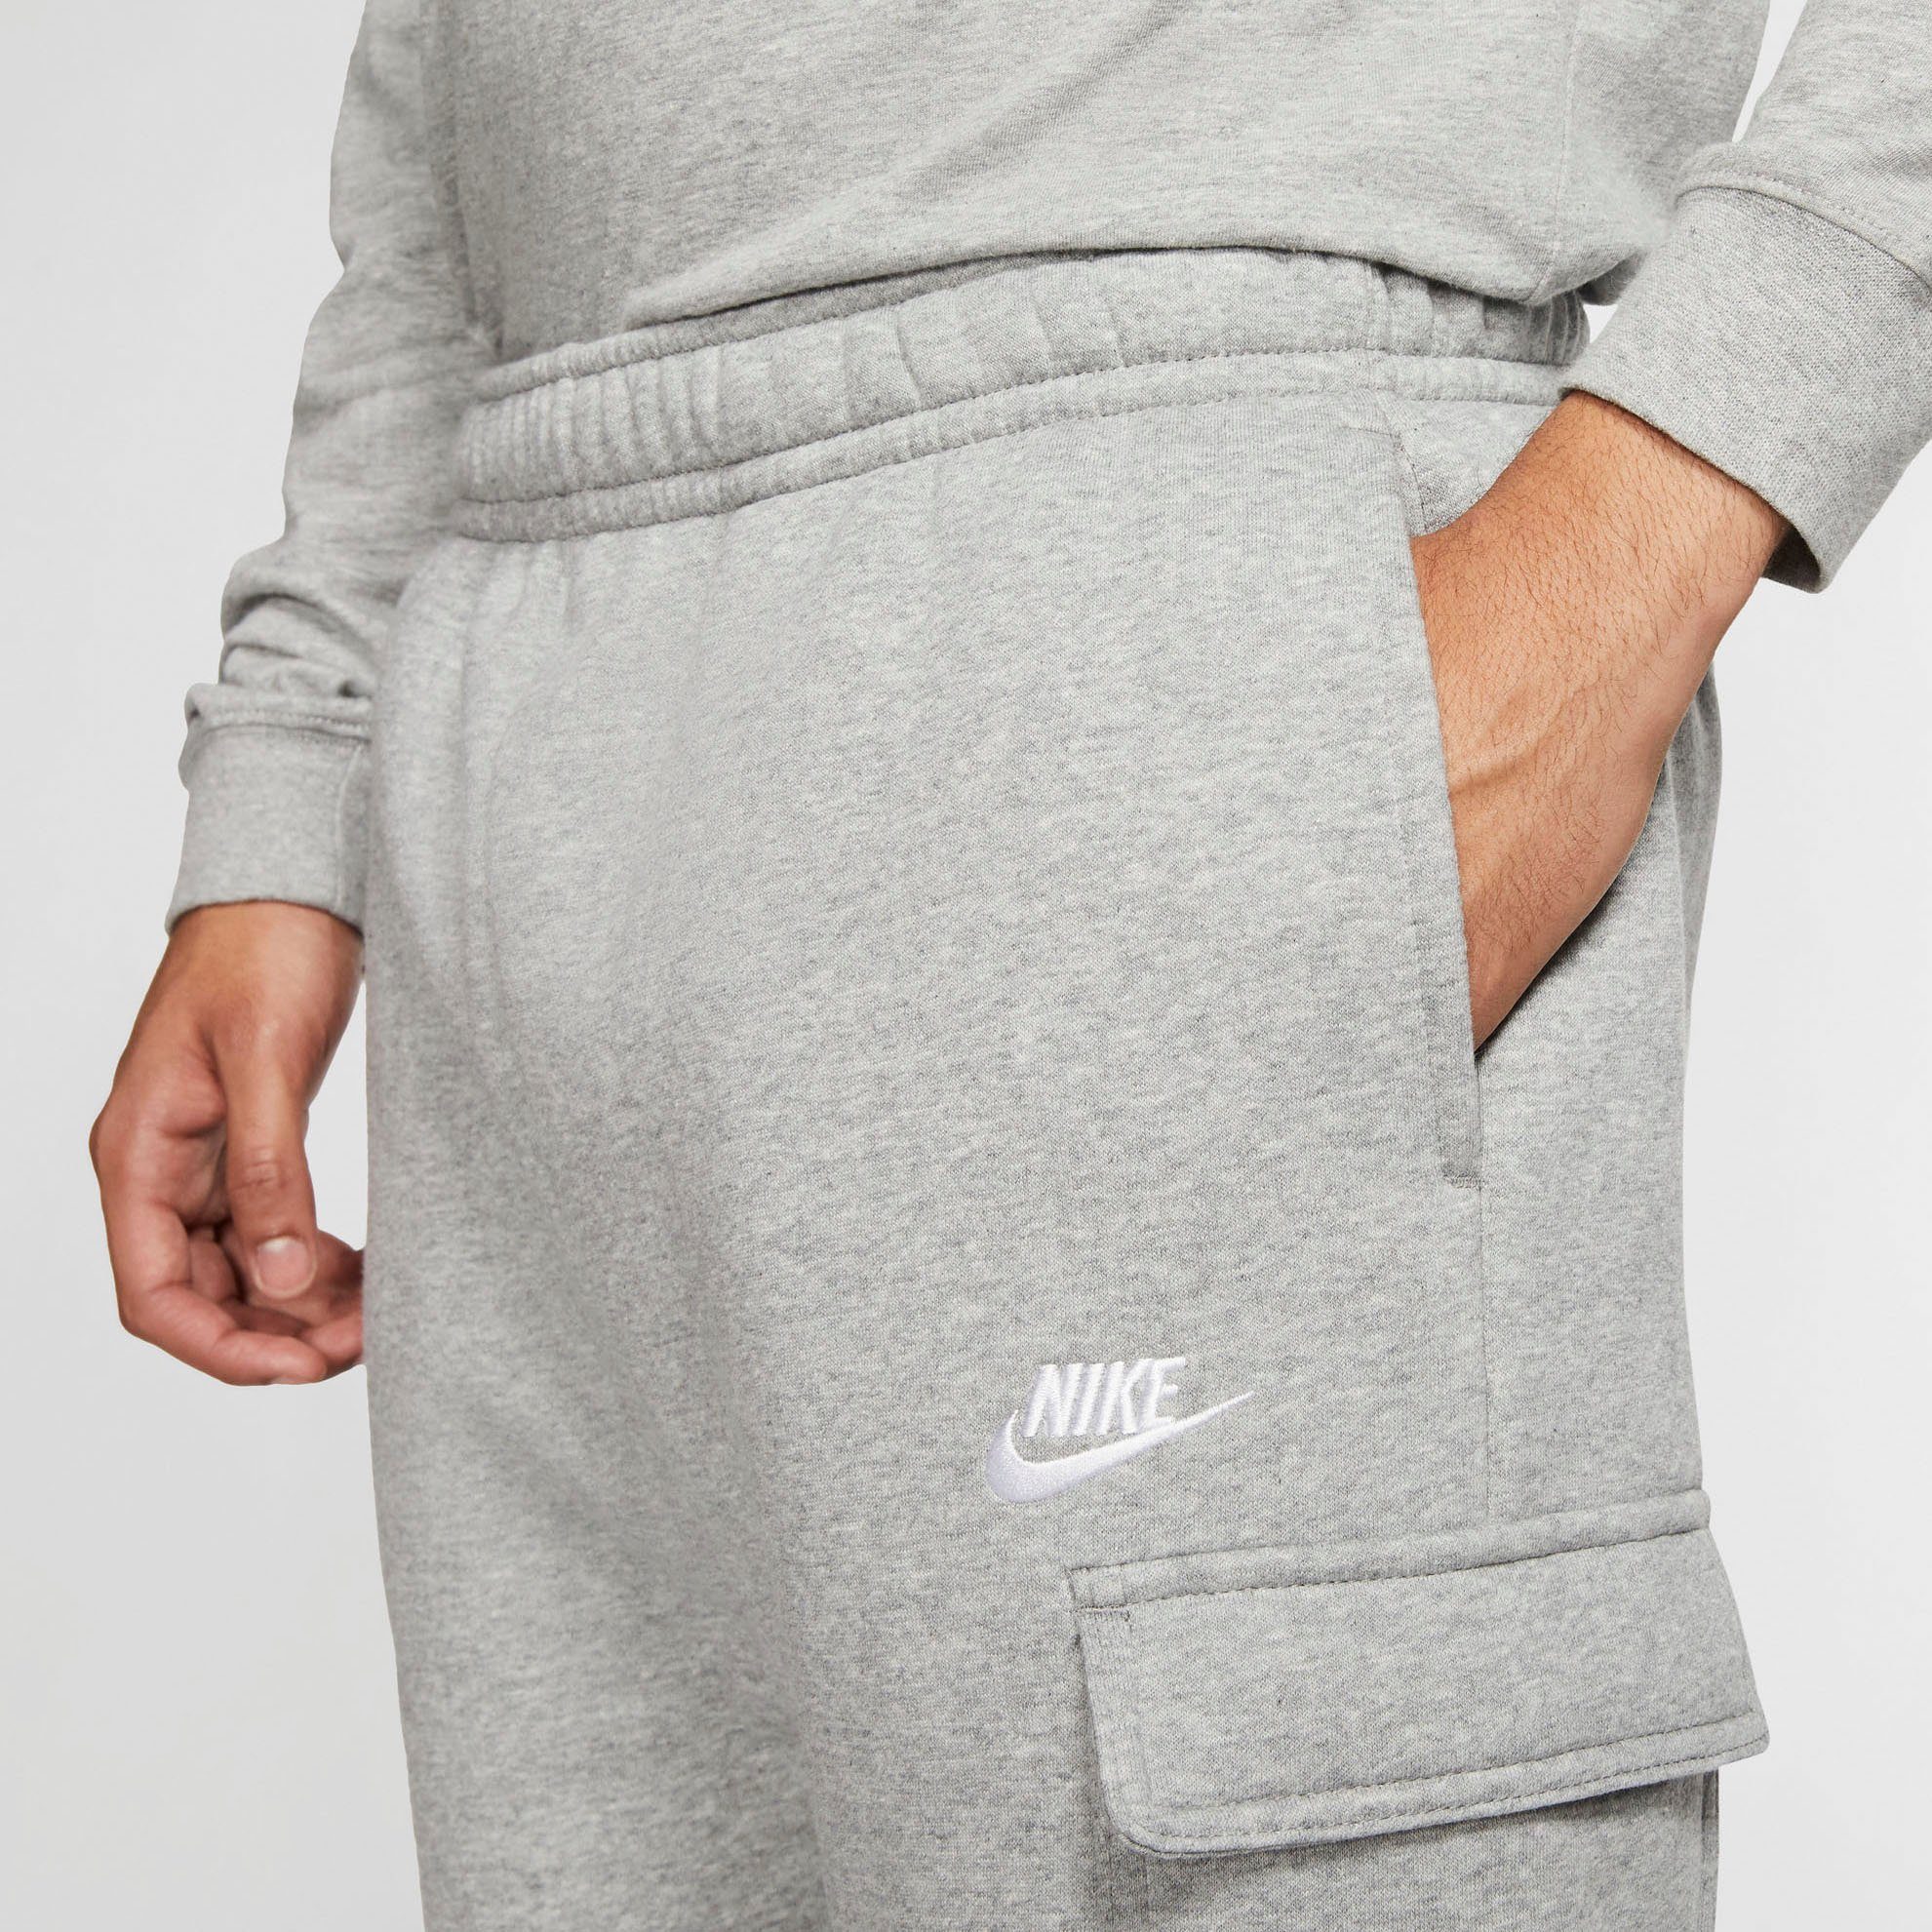 MEN'S CARGO Jogginghose CLUB Sportswear hellgrau-meliert Nike FLEECE PANTS